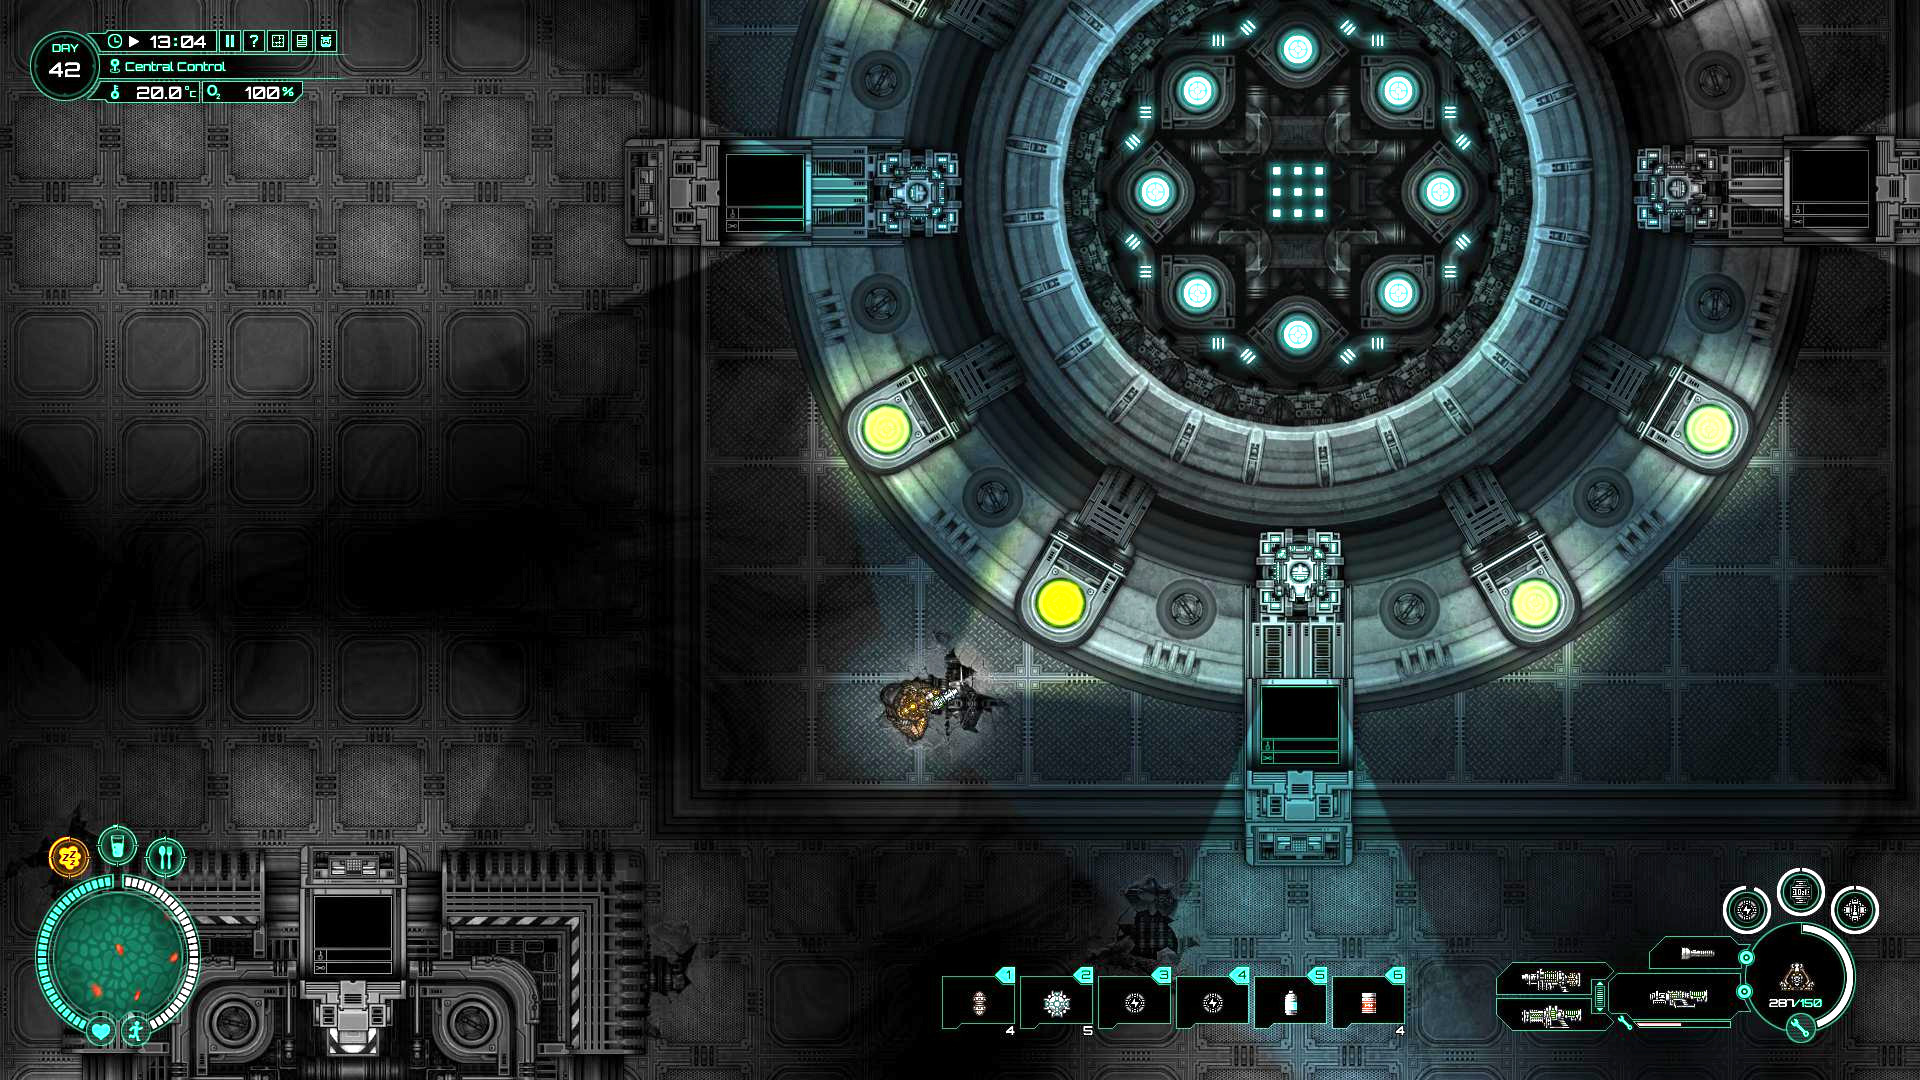 Subterrain screenshot 2